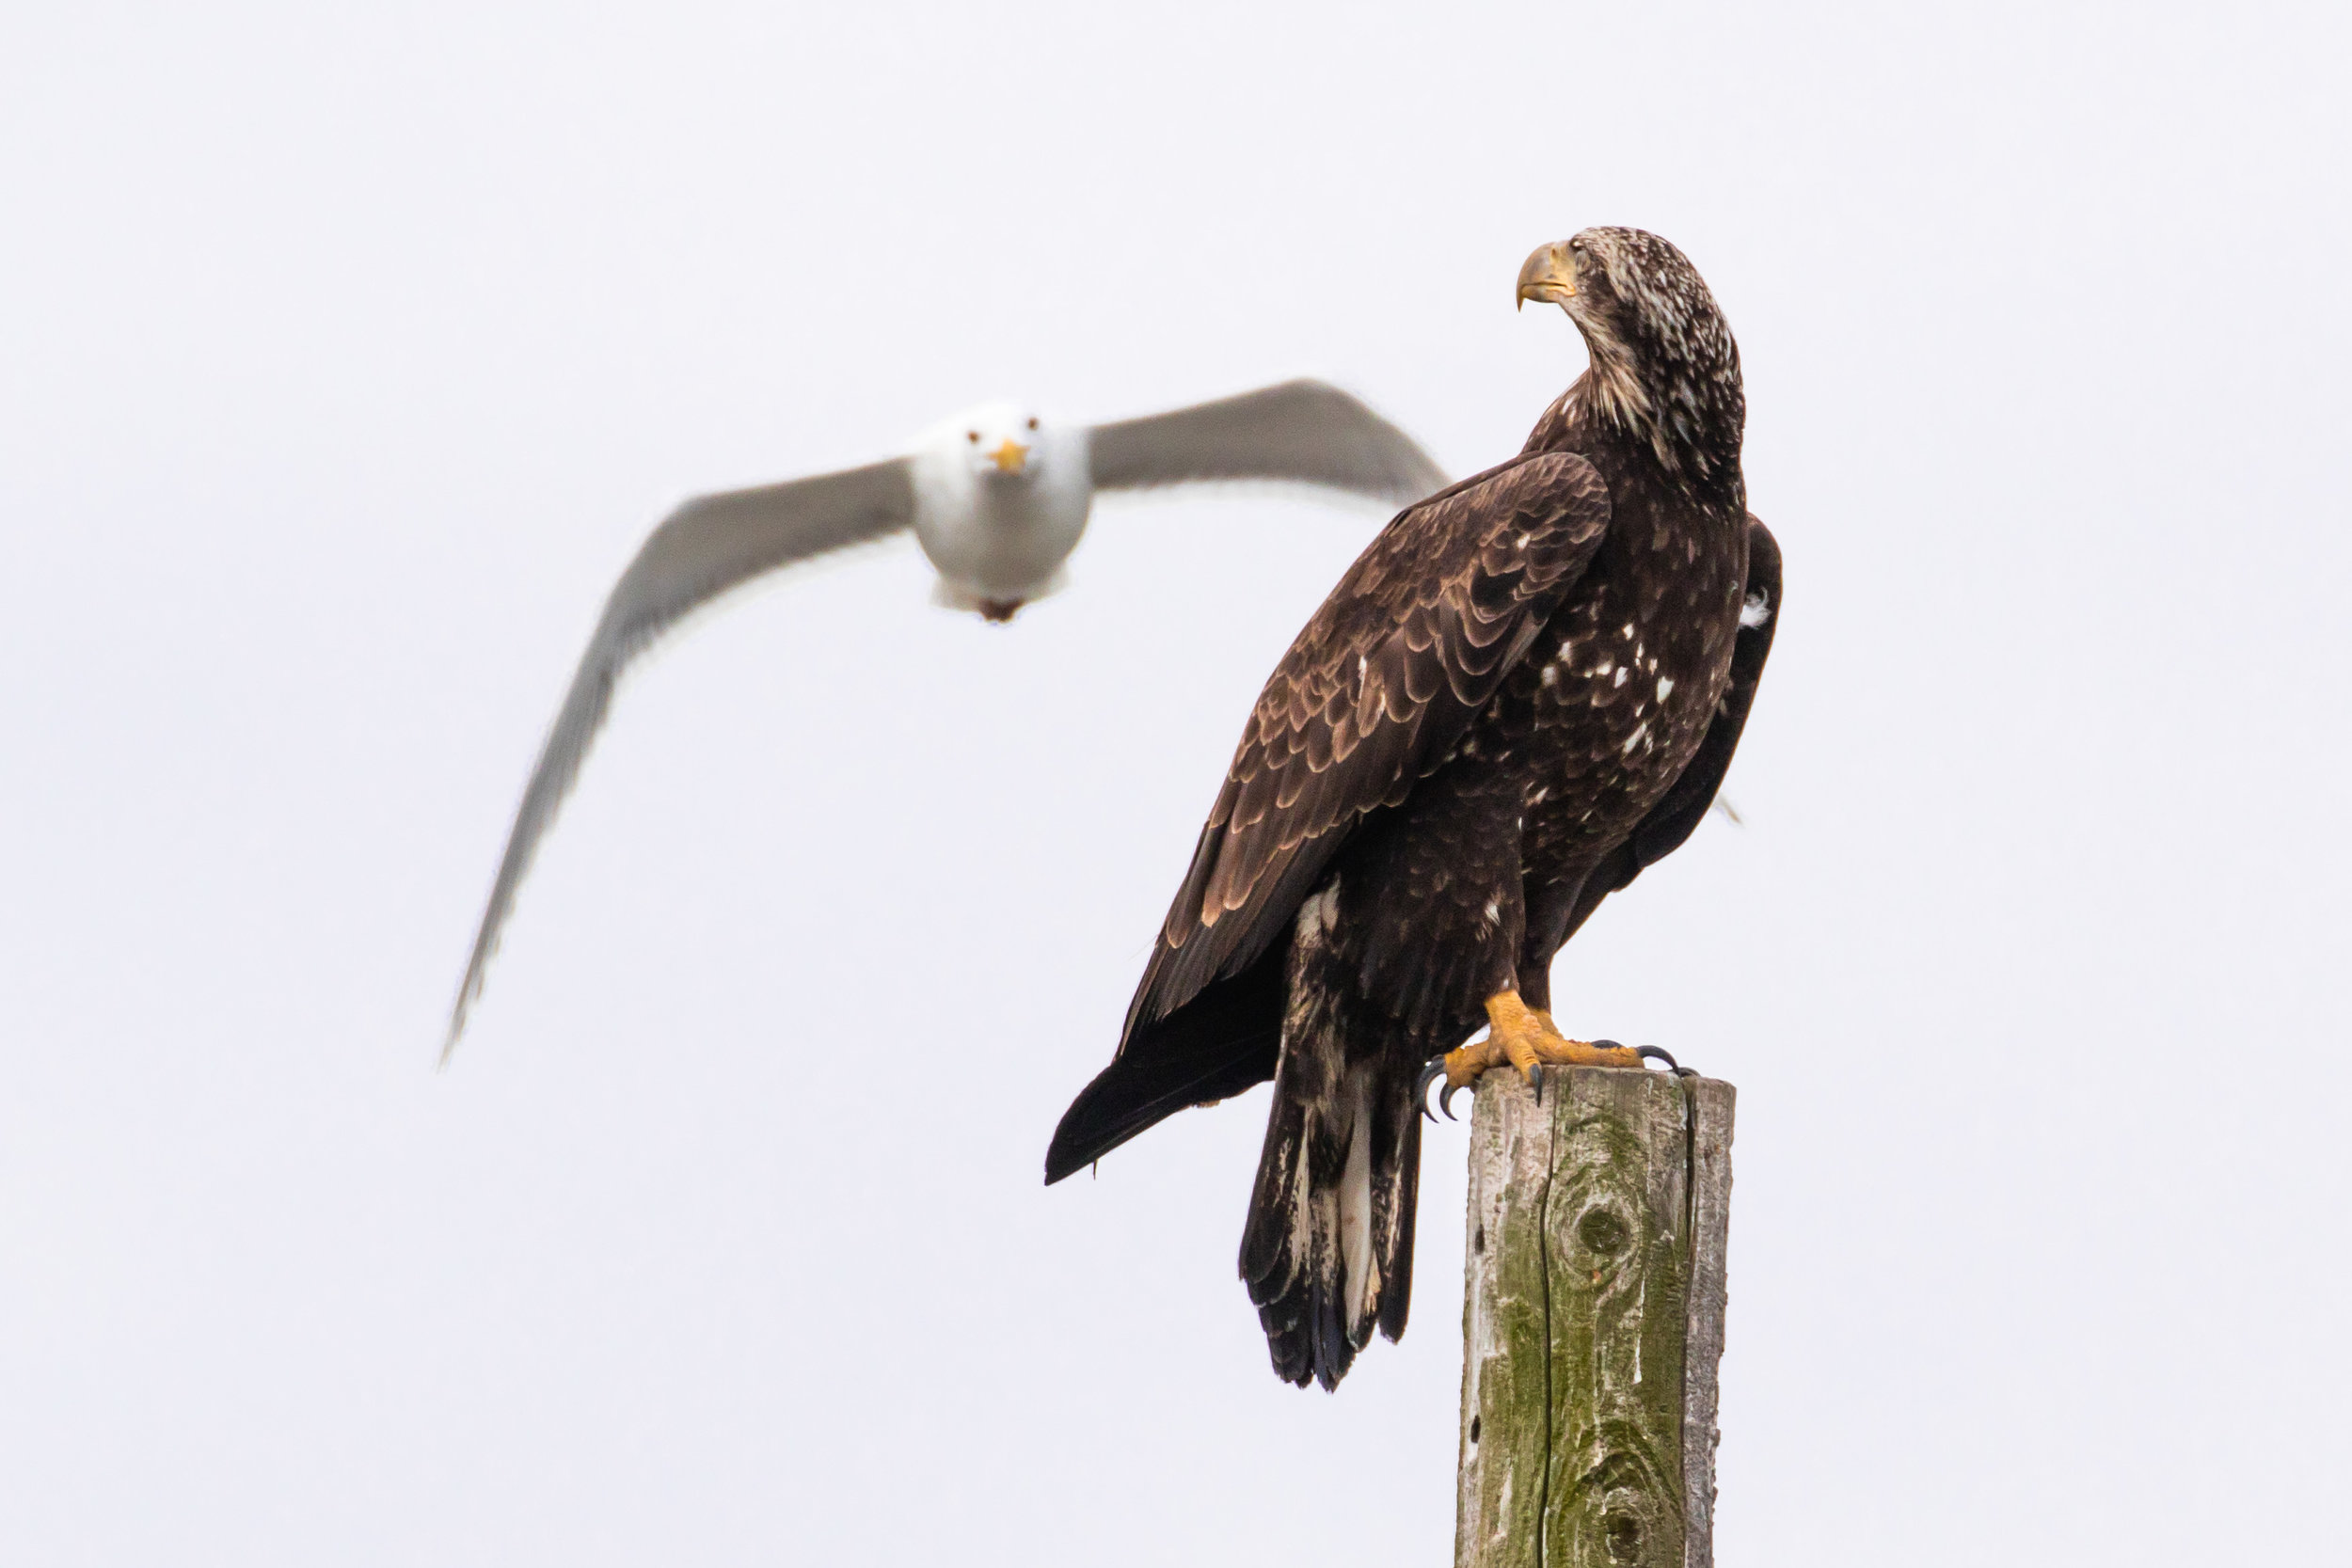 Juvenile Bald Eagle and Gull